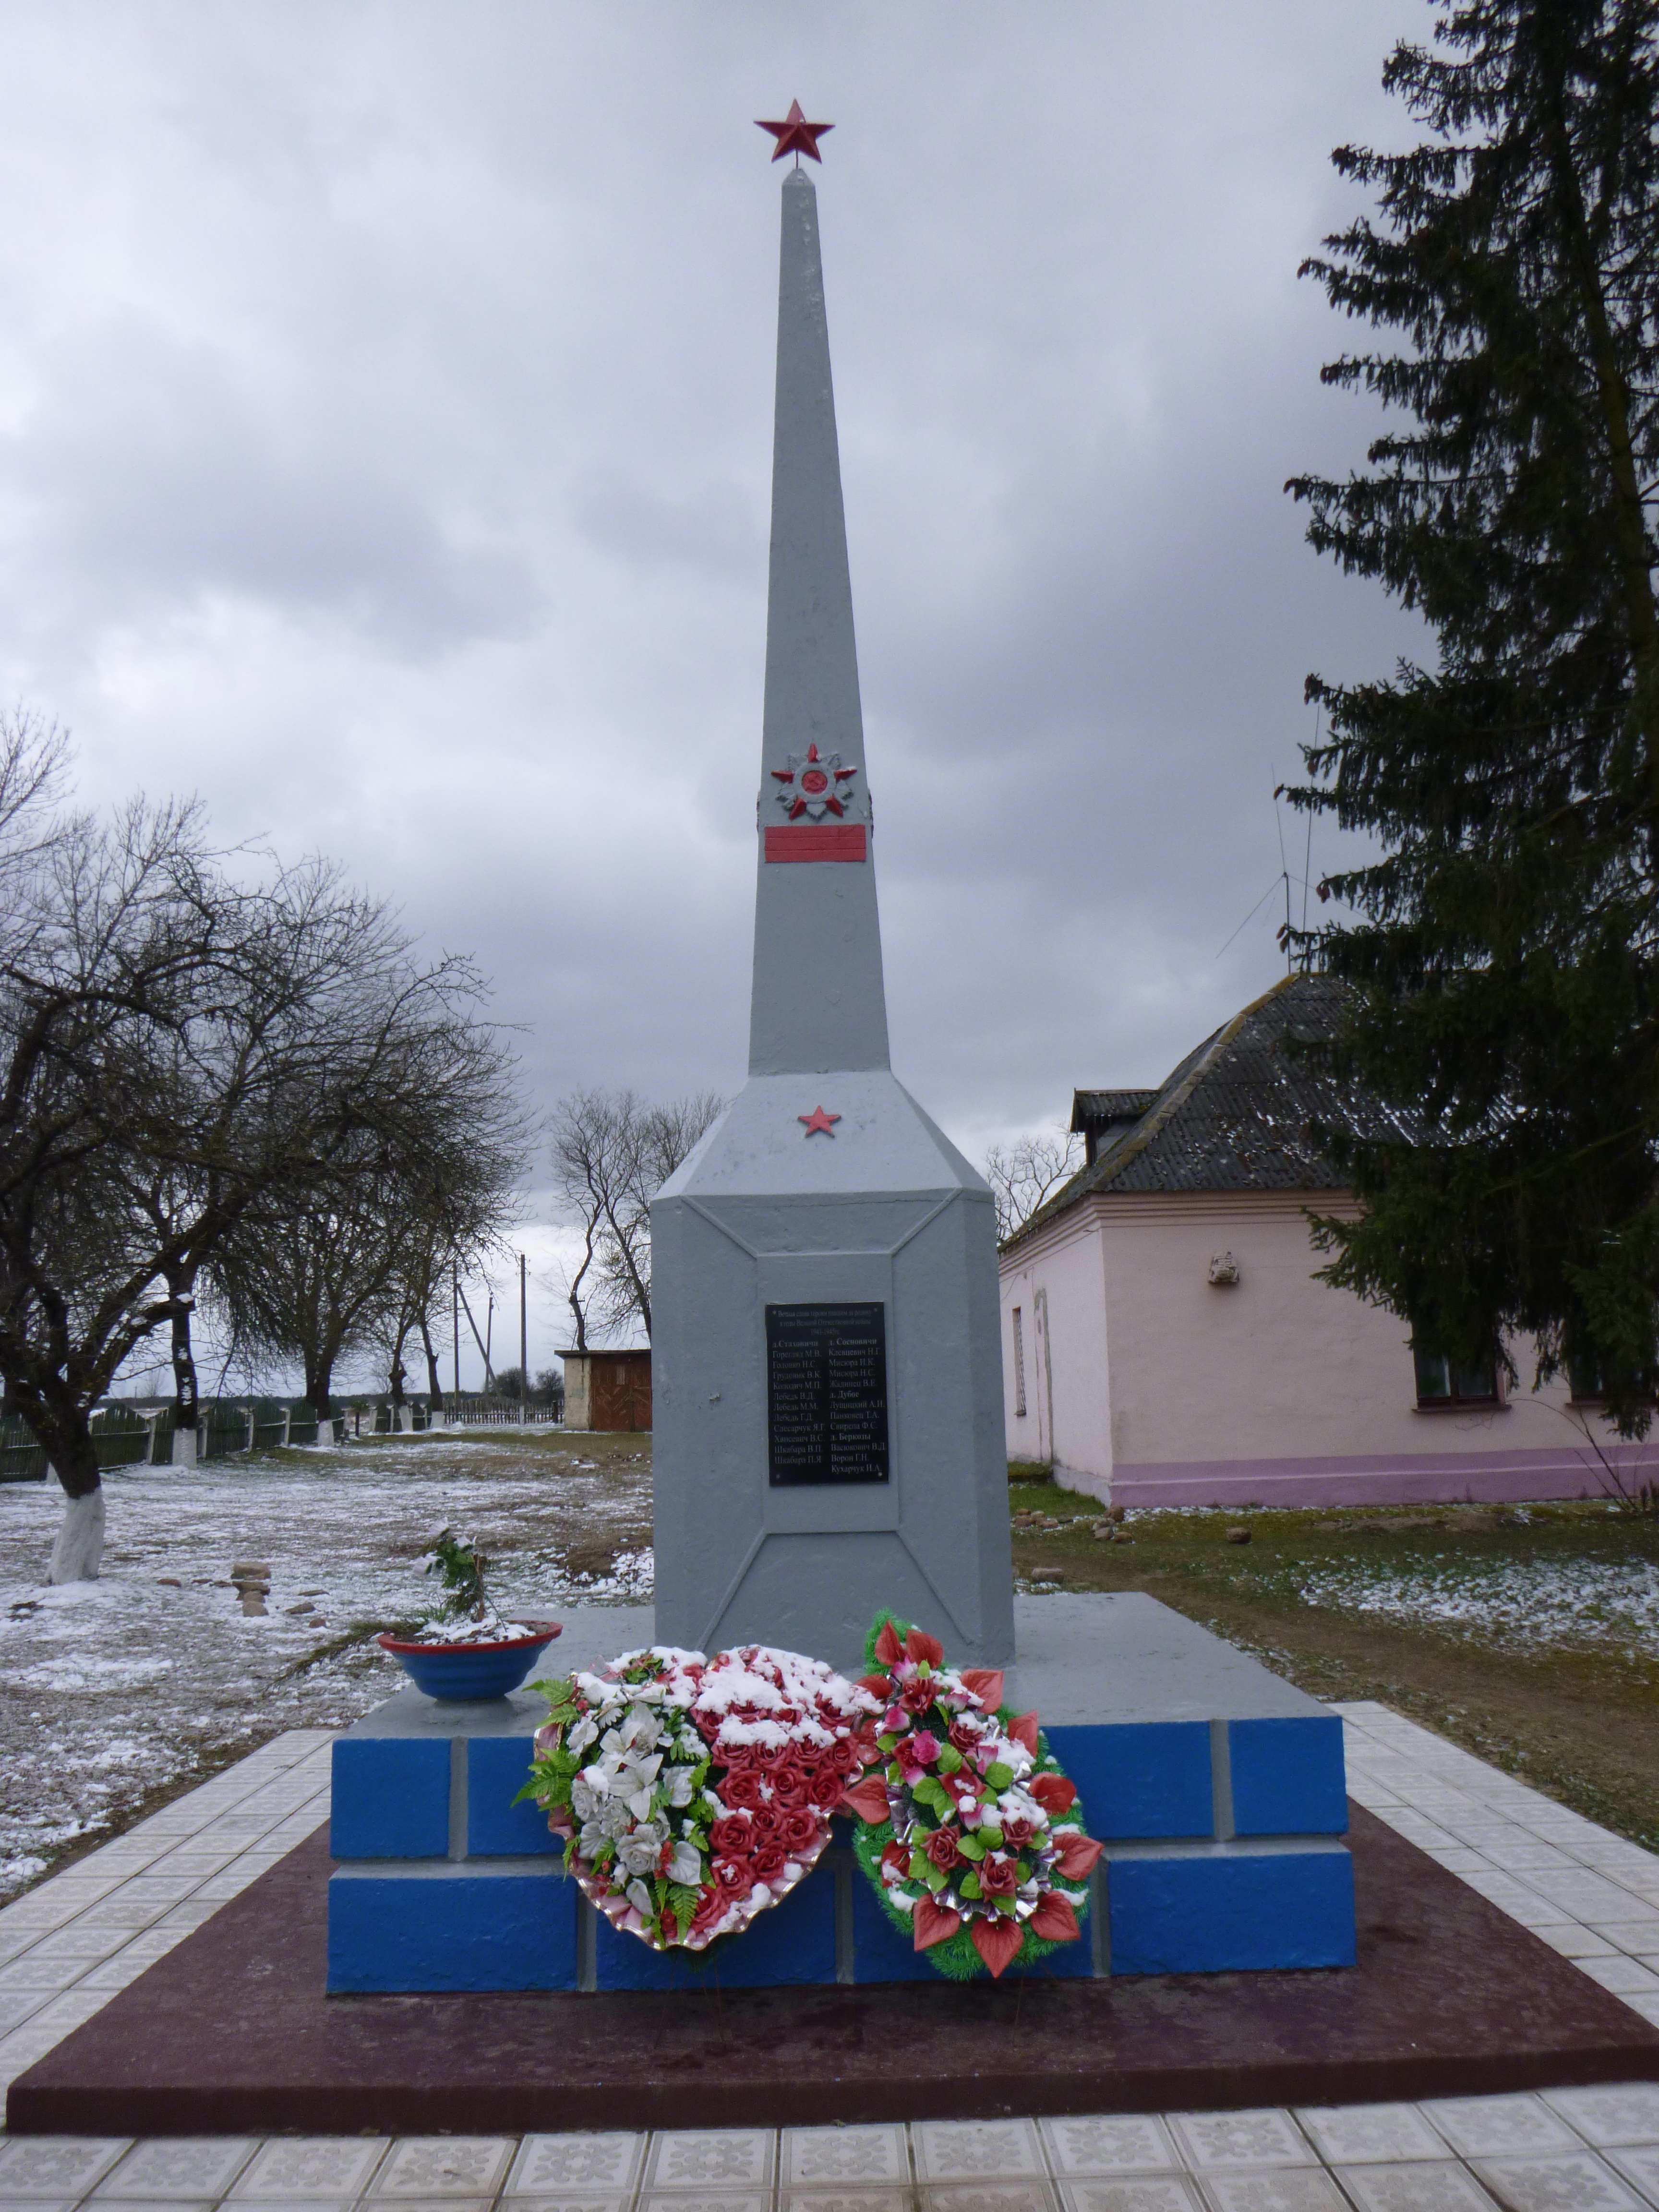 Памятник Землякам, расположенная в д. Дубое, Пинский район, Брестская область